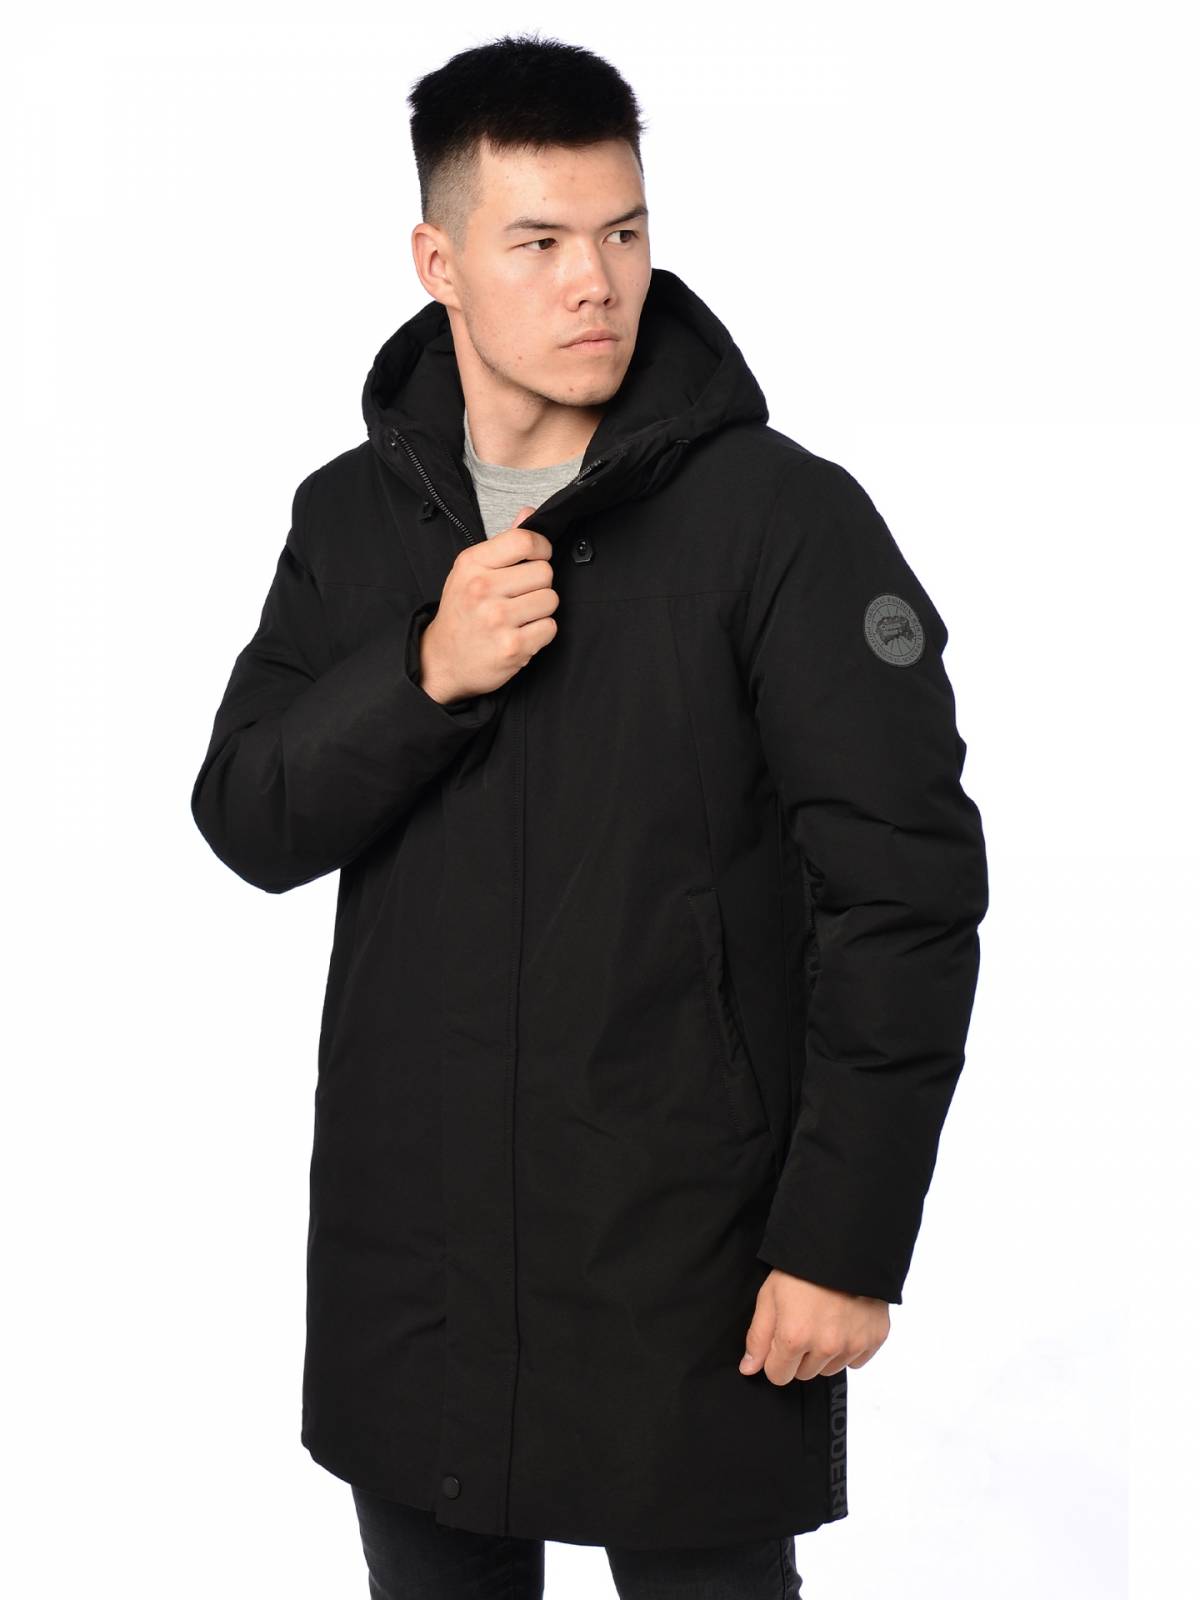 Зимняя куртка мужская Kasadun 3878 черная 54 RU